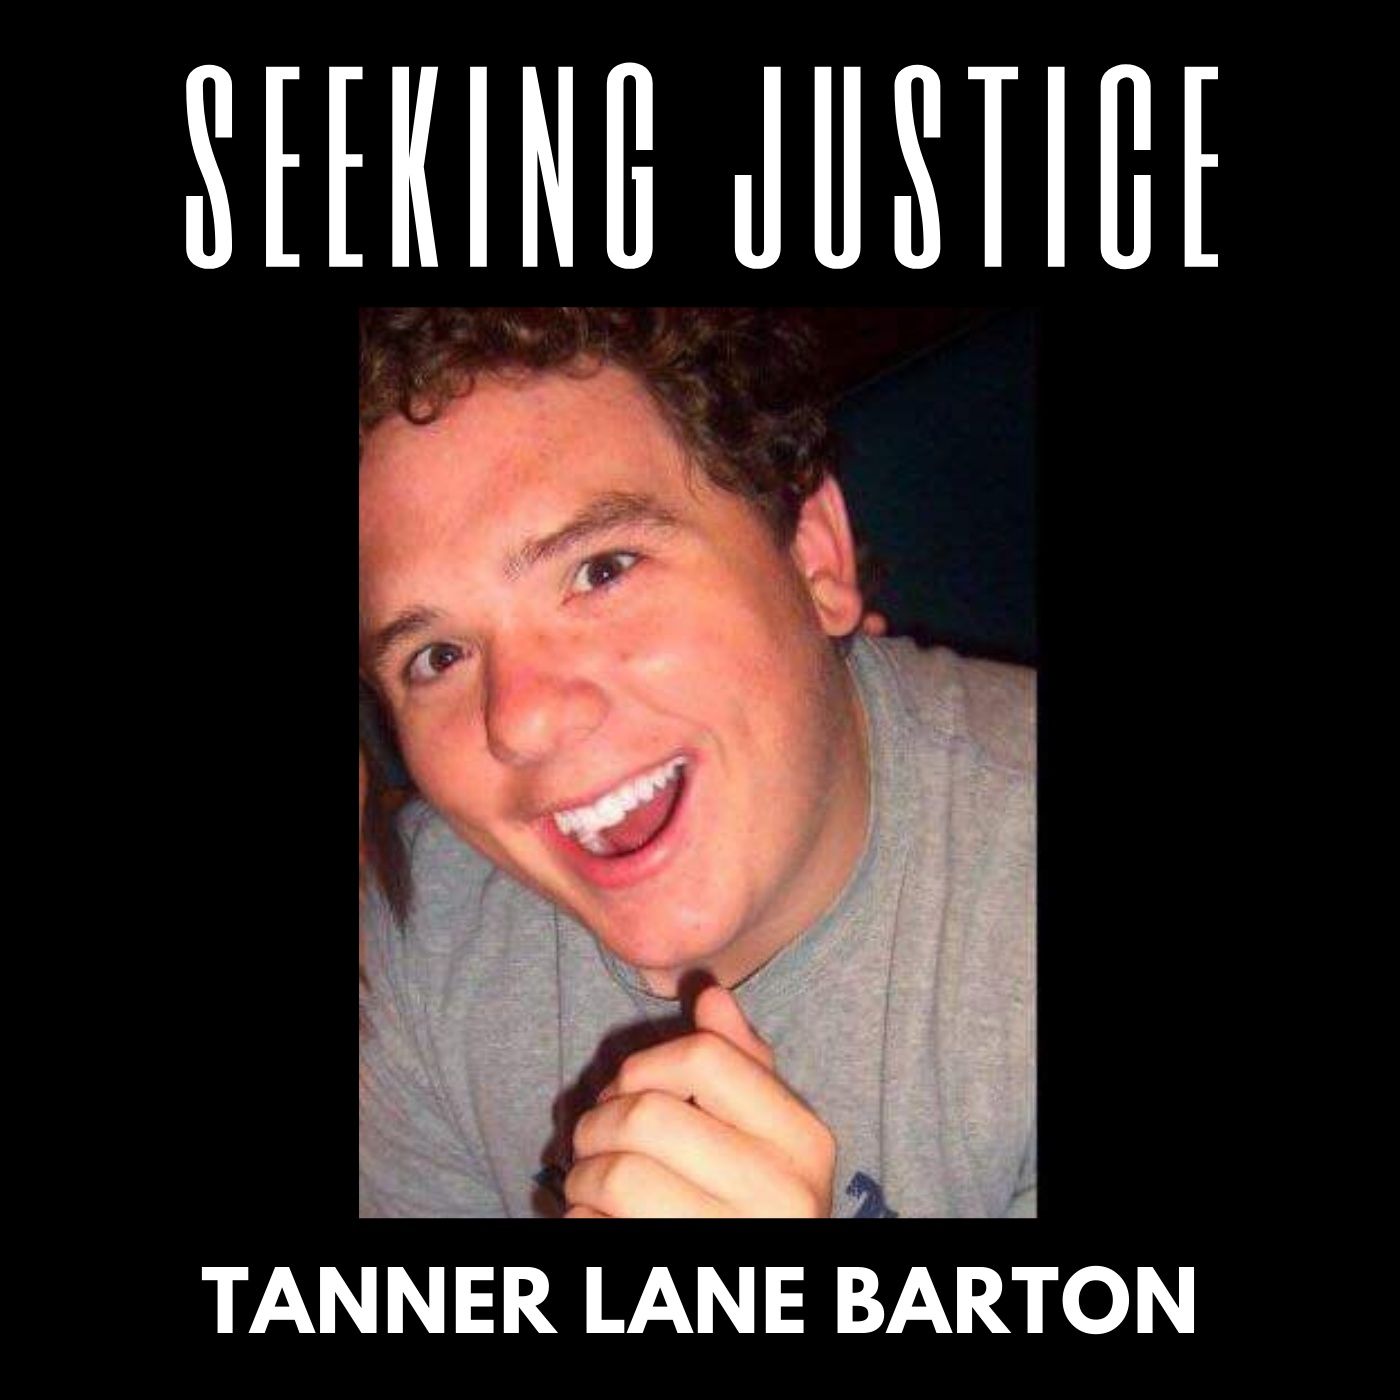 14. Seeking Justice: For Tanner Lane Barton